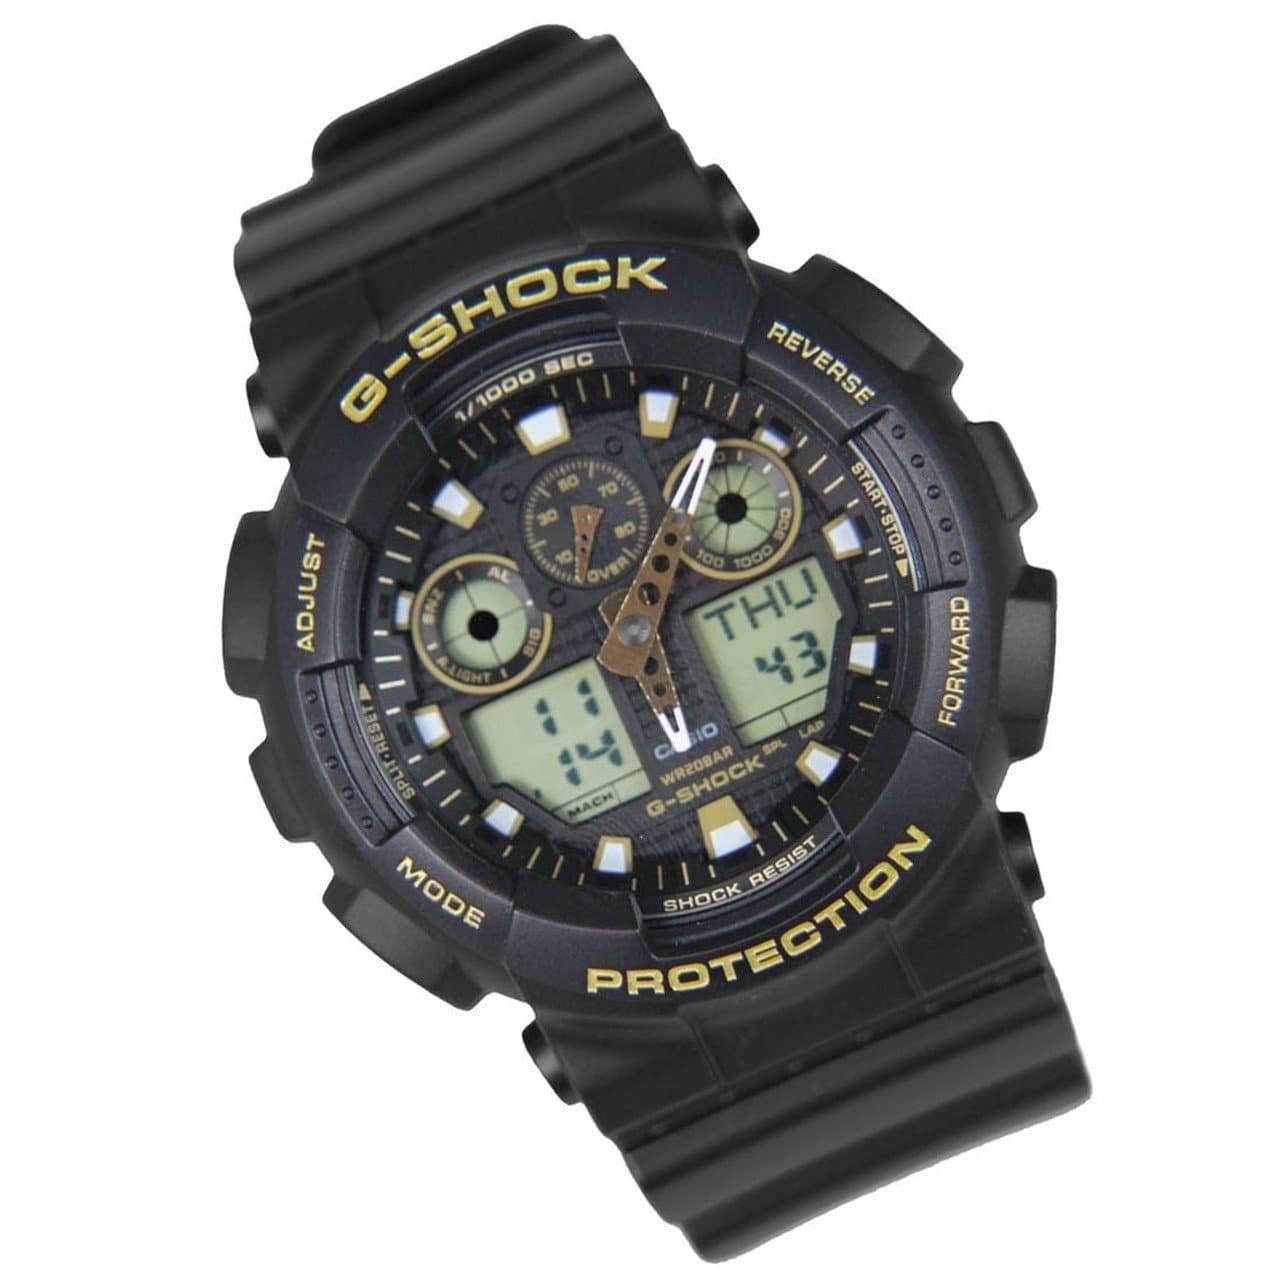 Casio G-Shock Analog-Digital Black x Gold Accents Watch GA100GBX-1A9DR - Diligence1International